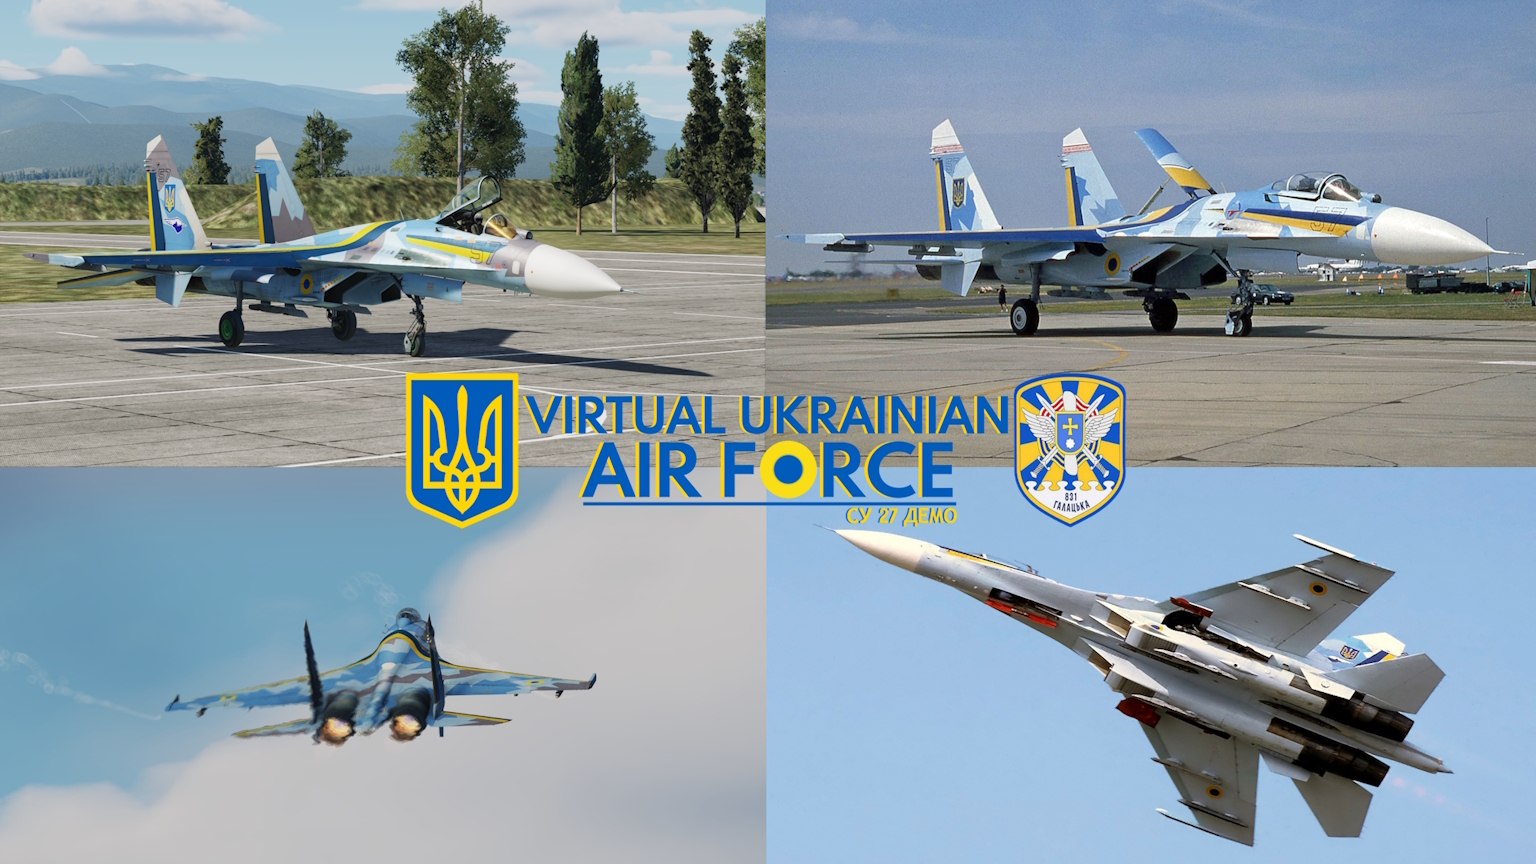 Ukrainian Air Force 1996 Splinter